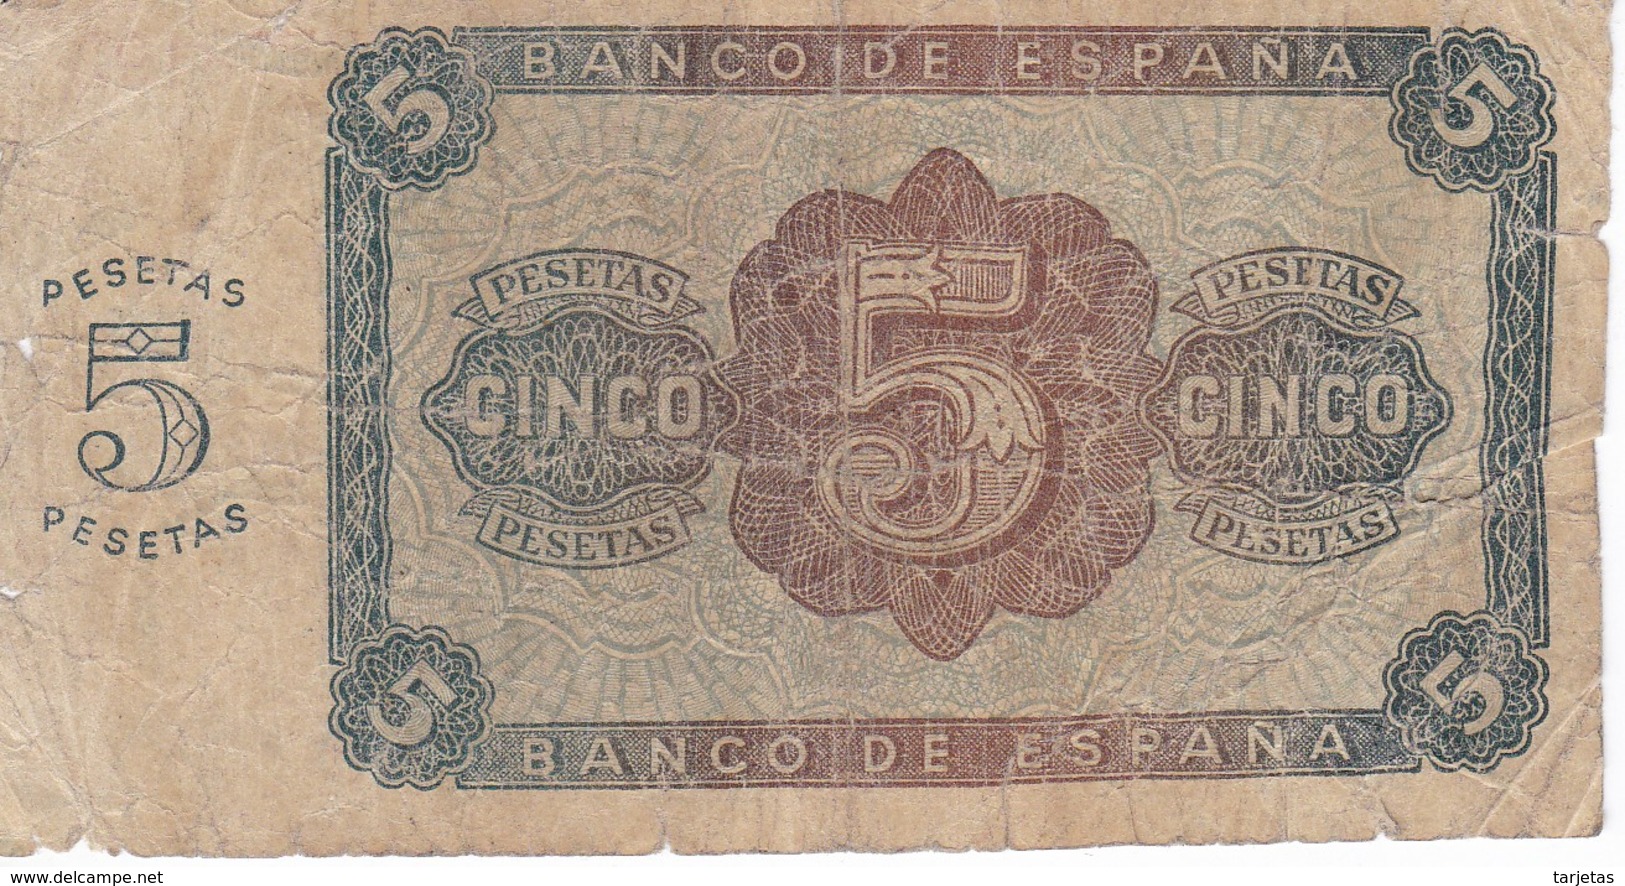 BILLETE DE ESPAÑA DE 5 PTAS DE BURGOS DEL AÑO 1938 SERIE C  (BANKNOTE) - 5 Pesetas